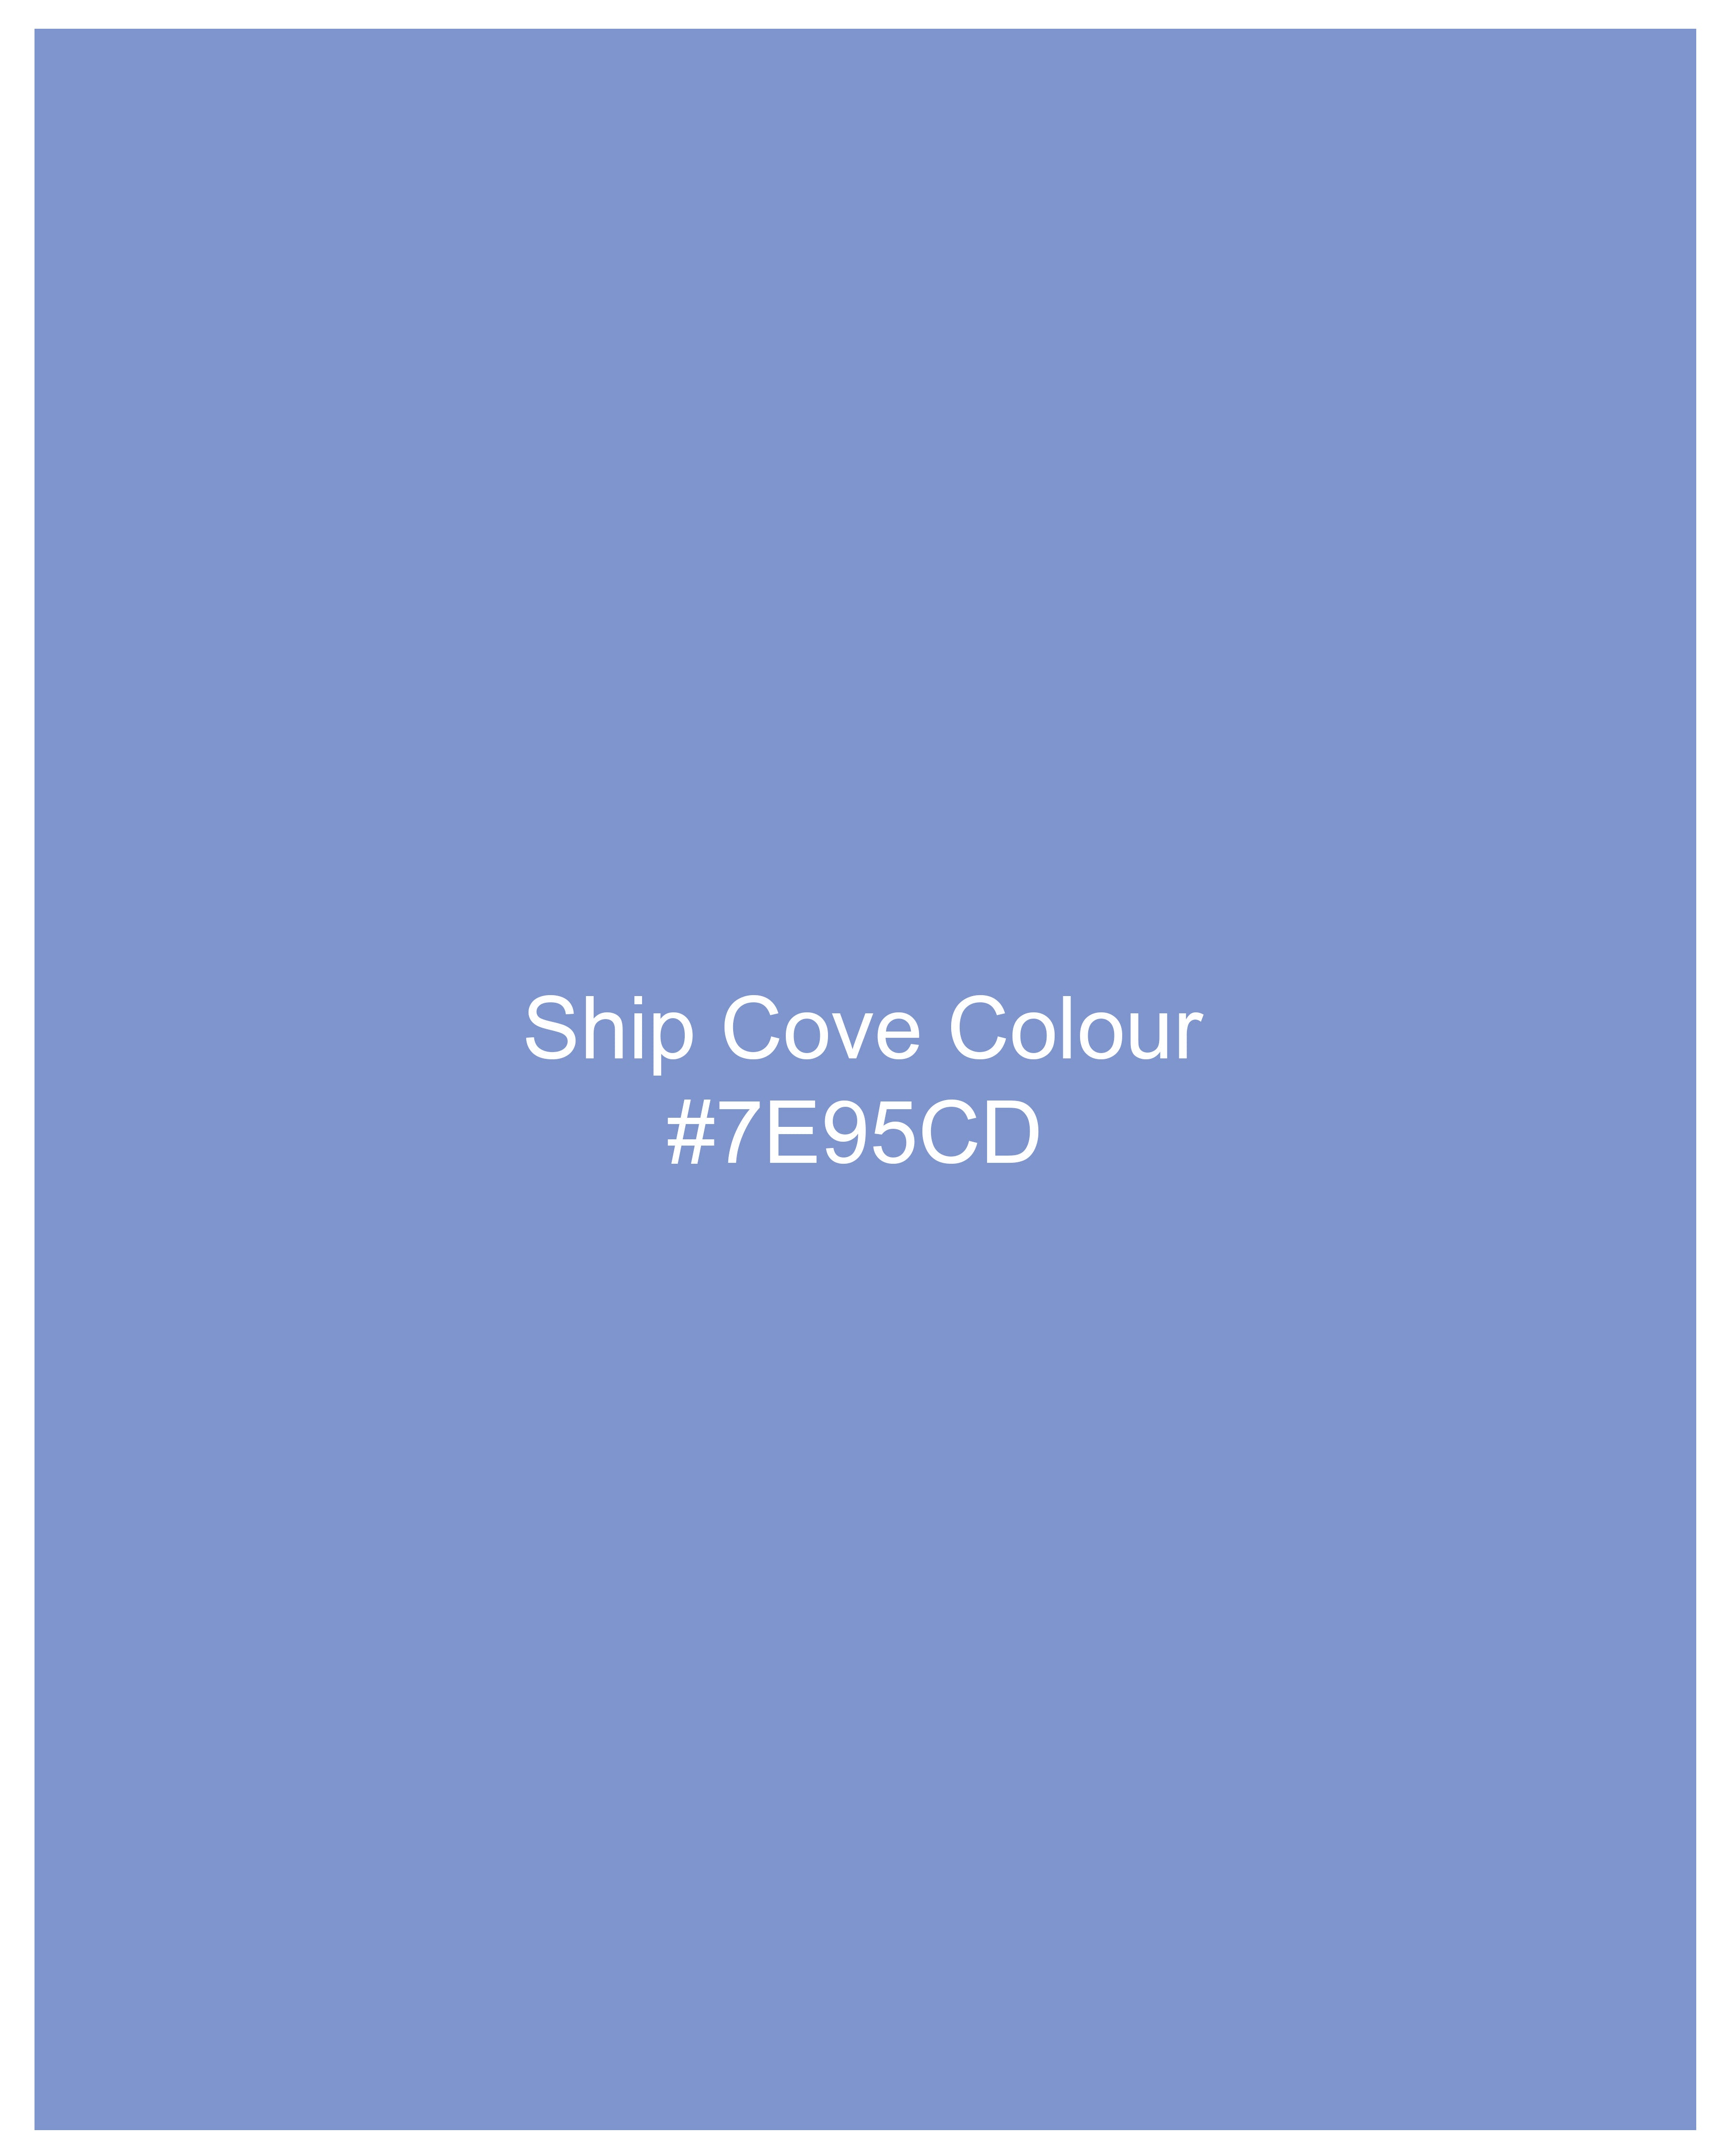 Ship Cove Blue Chambray Shorts SR239-28, SR239-30, SR239-32, SR239-34, SR239-36, SR239-38, SR239-40, SR239-42, SR239-44